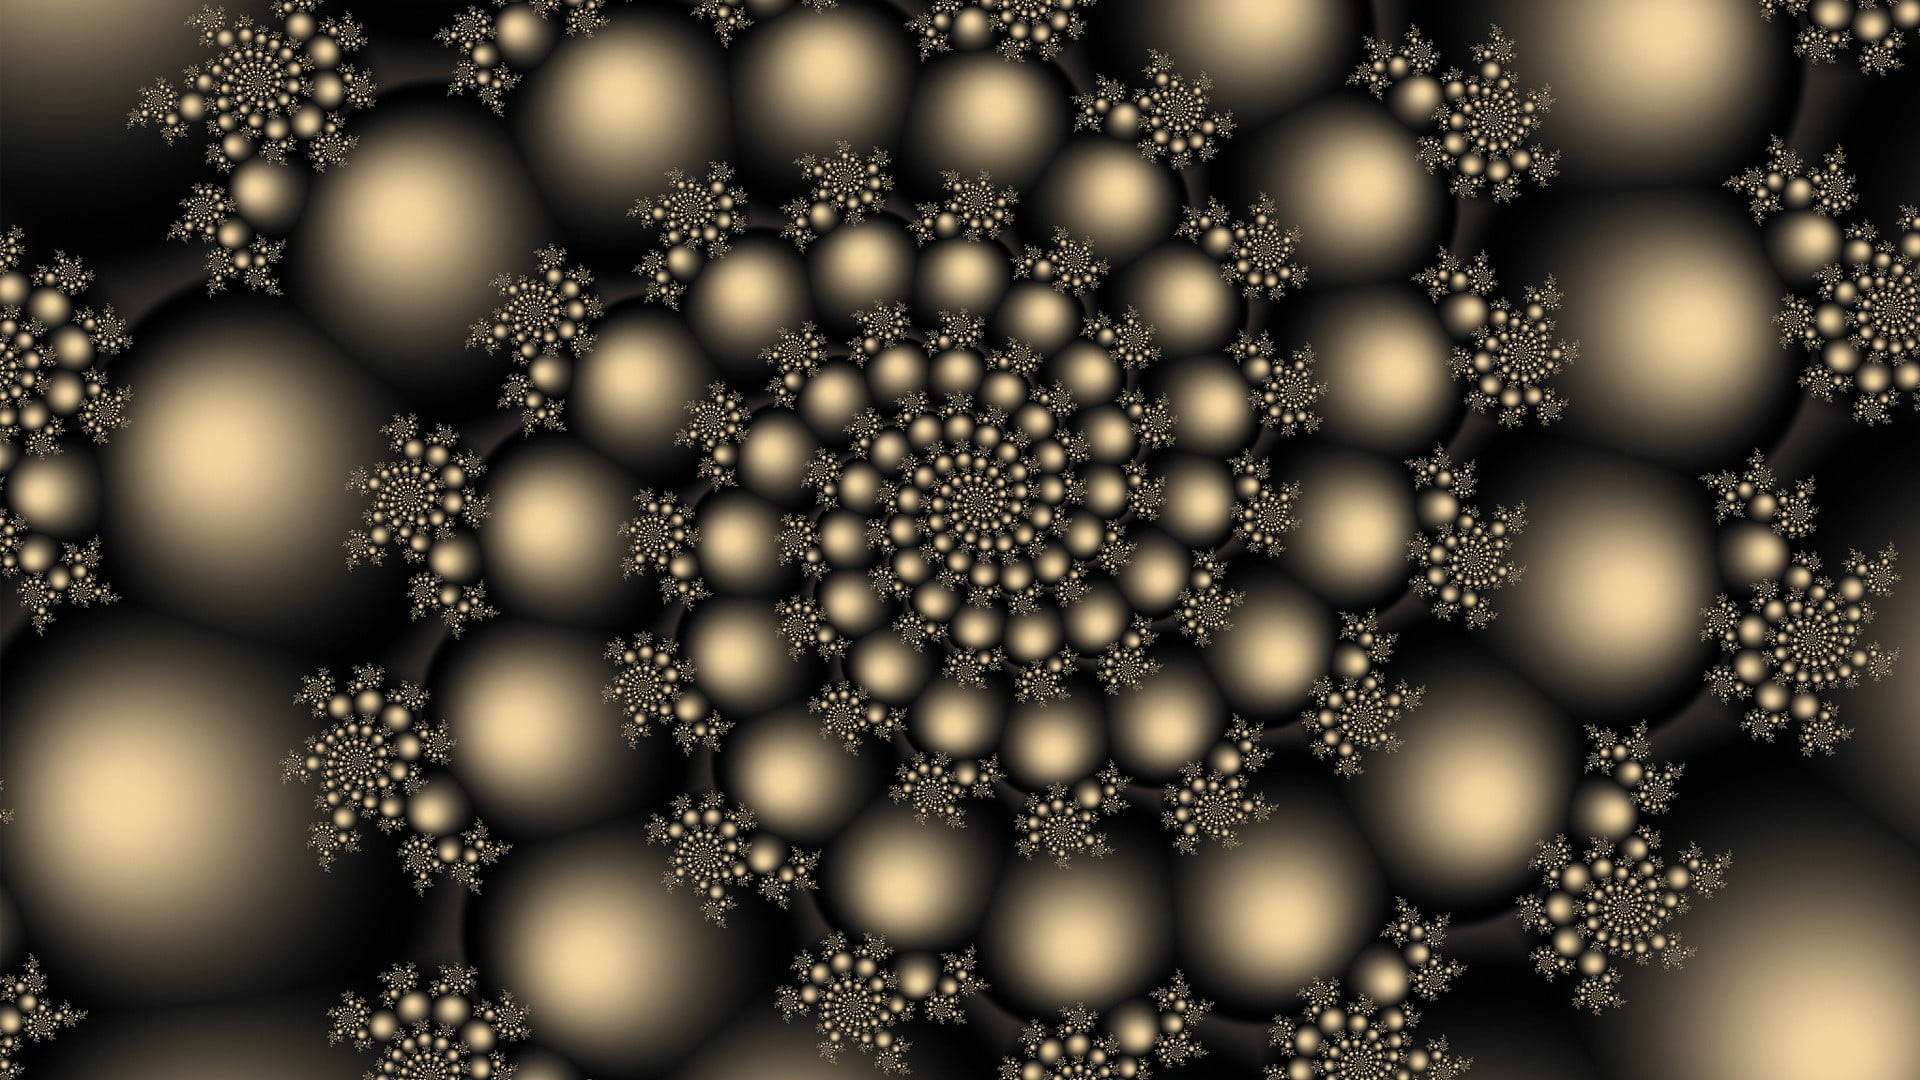 Spiral Metallic Balls Background